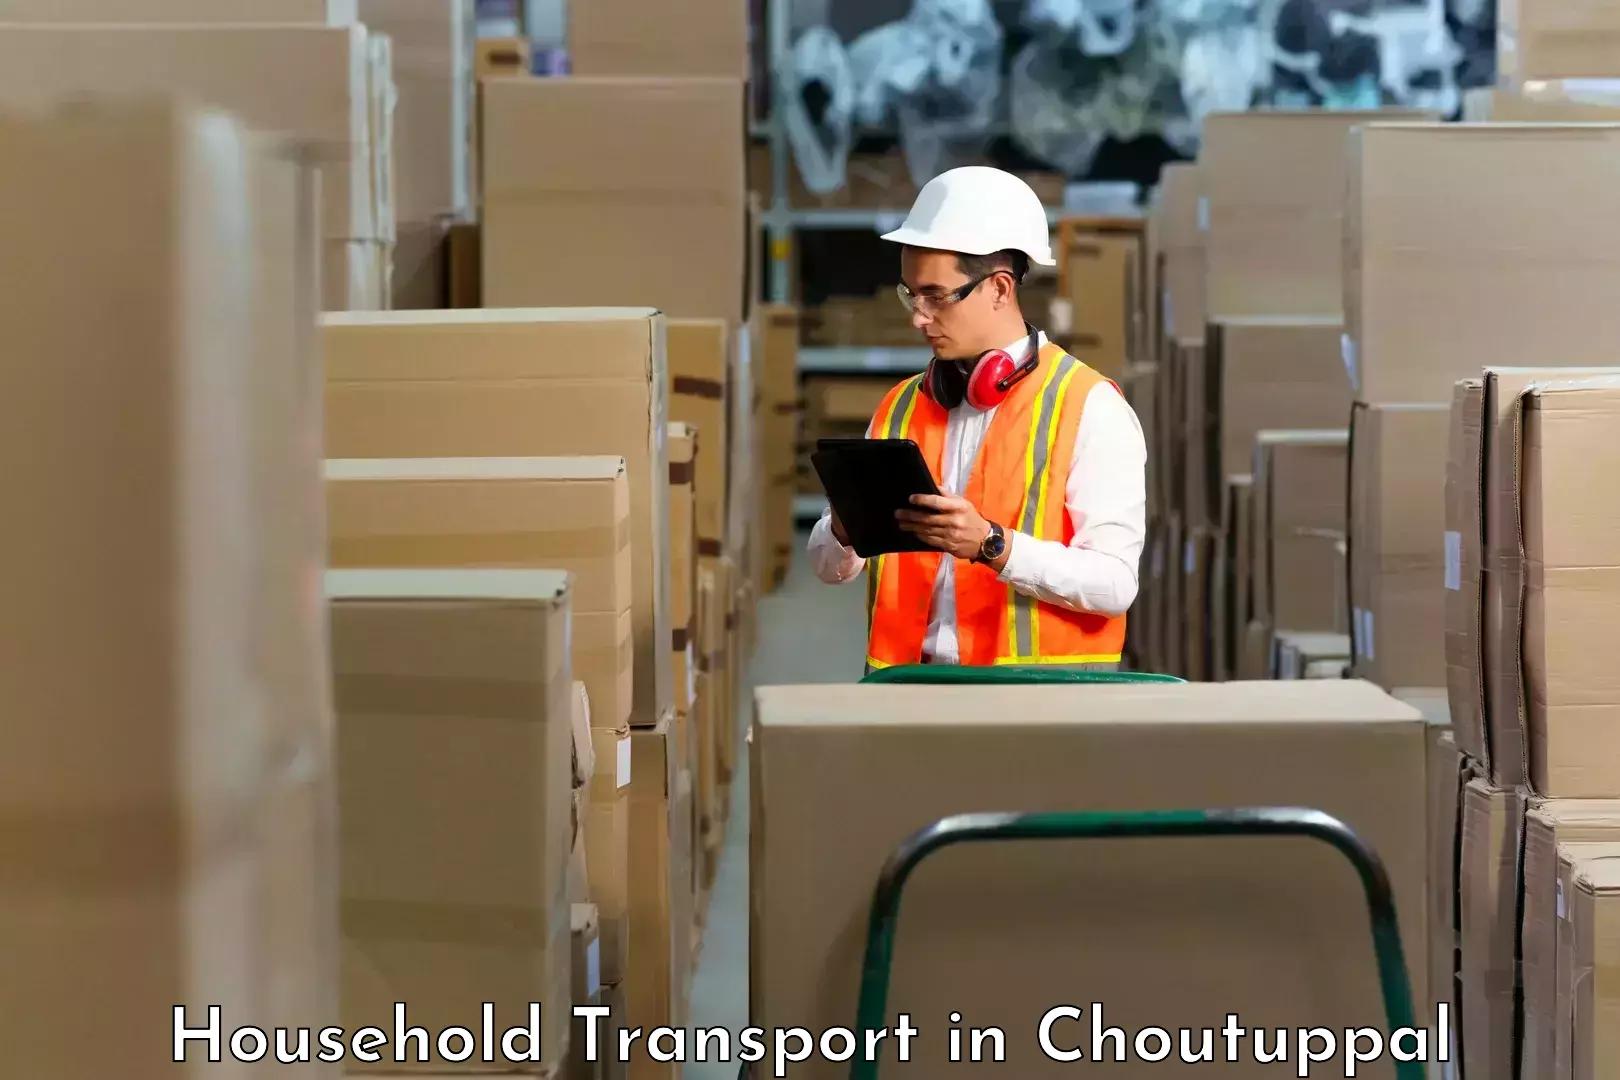 Furniture transport professionals in Choutuppal